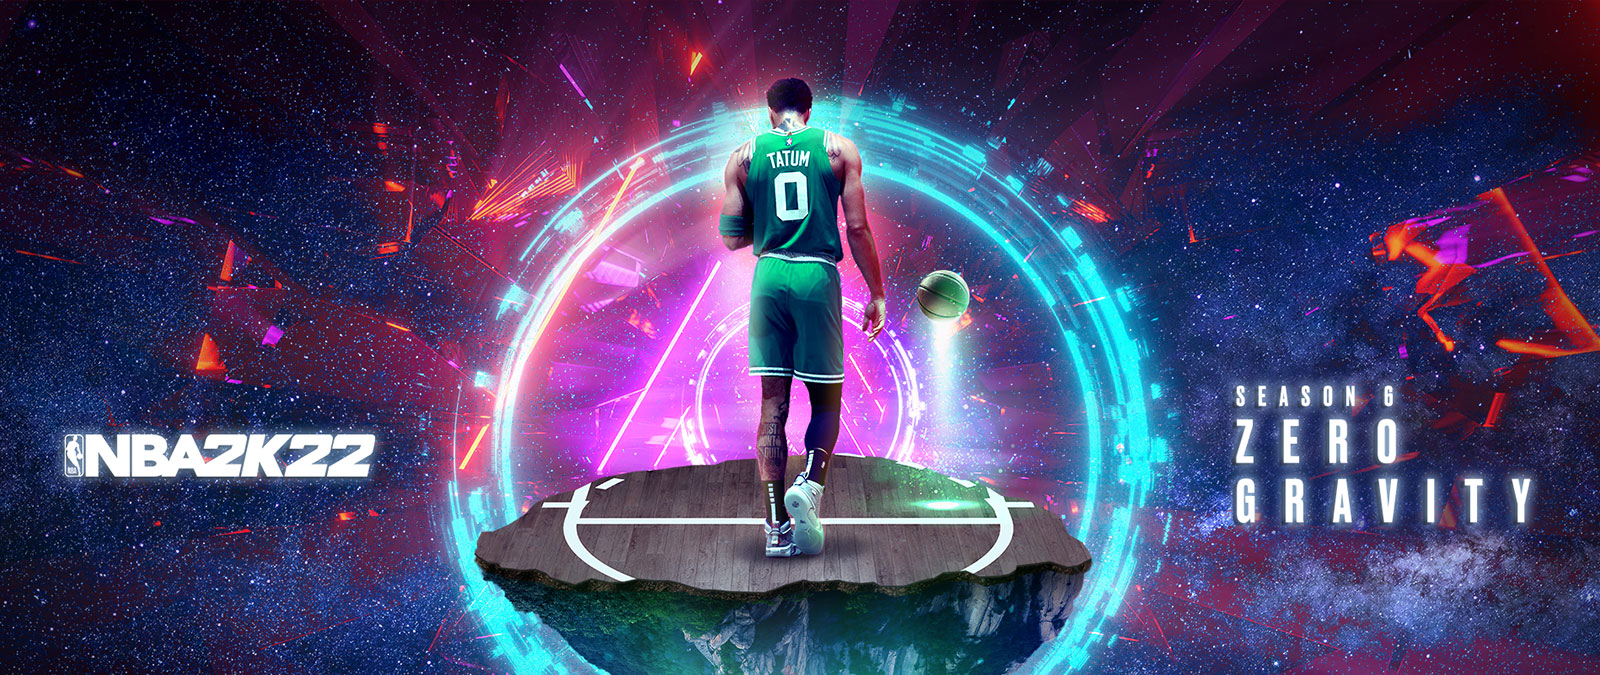 NBA 2K22, Saison 6 Zero Gravity, Tatum se tient sur un bout de terrain de basket-ball qui flotte dans l’espace, entouré d’anneaux d’énergie.